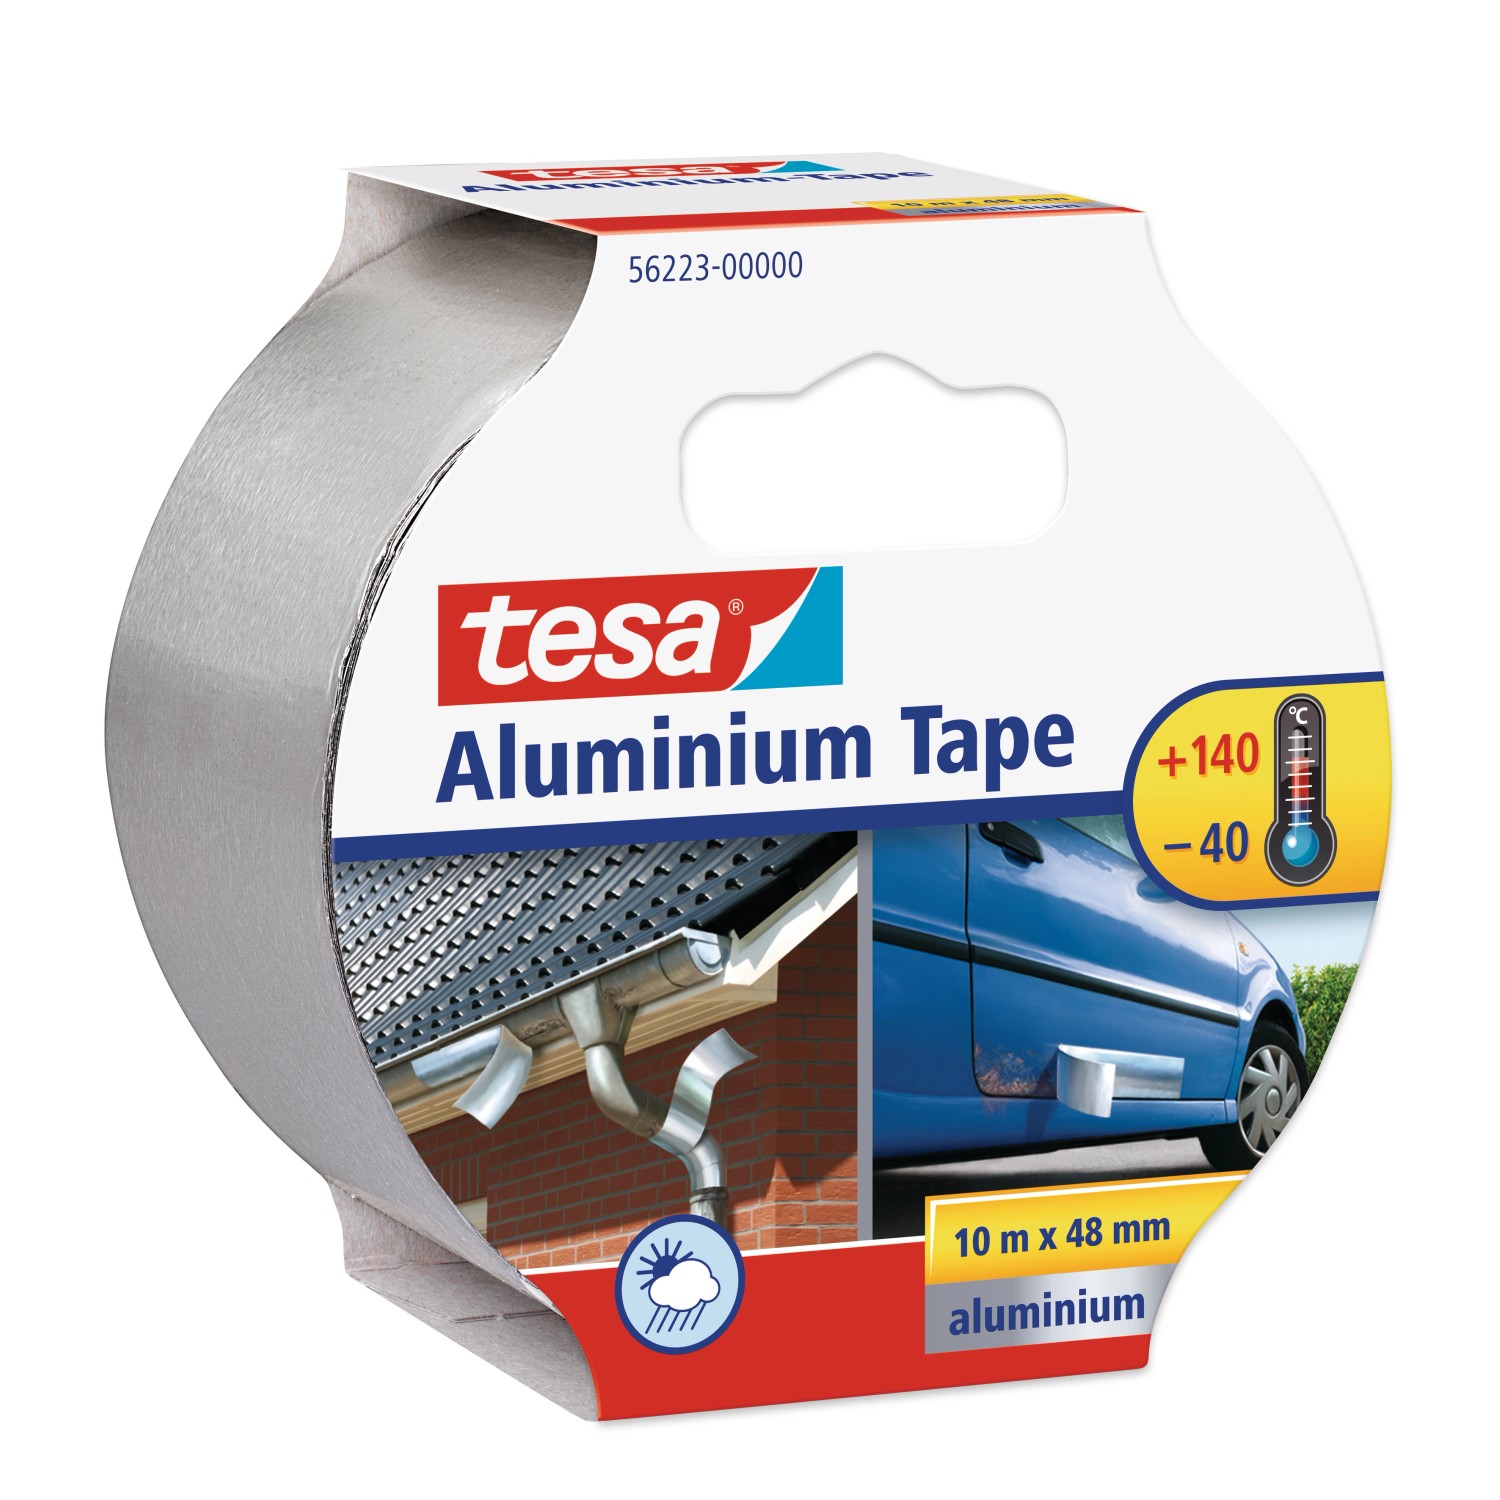 Tesa Aluminium Tape 10 m x 50 mm